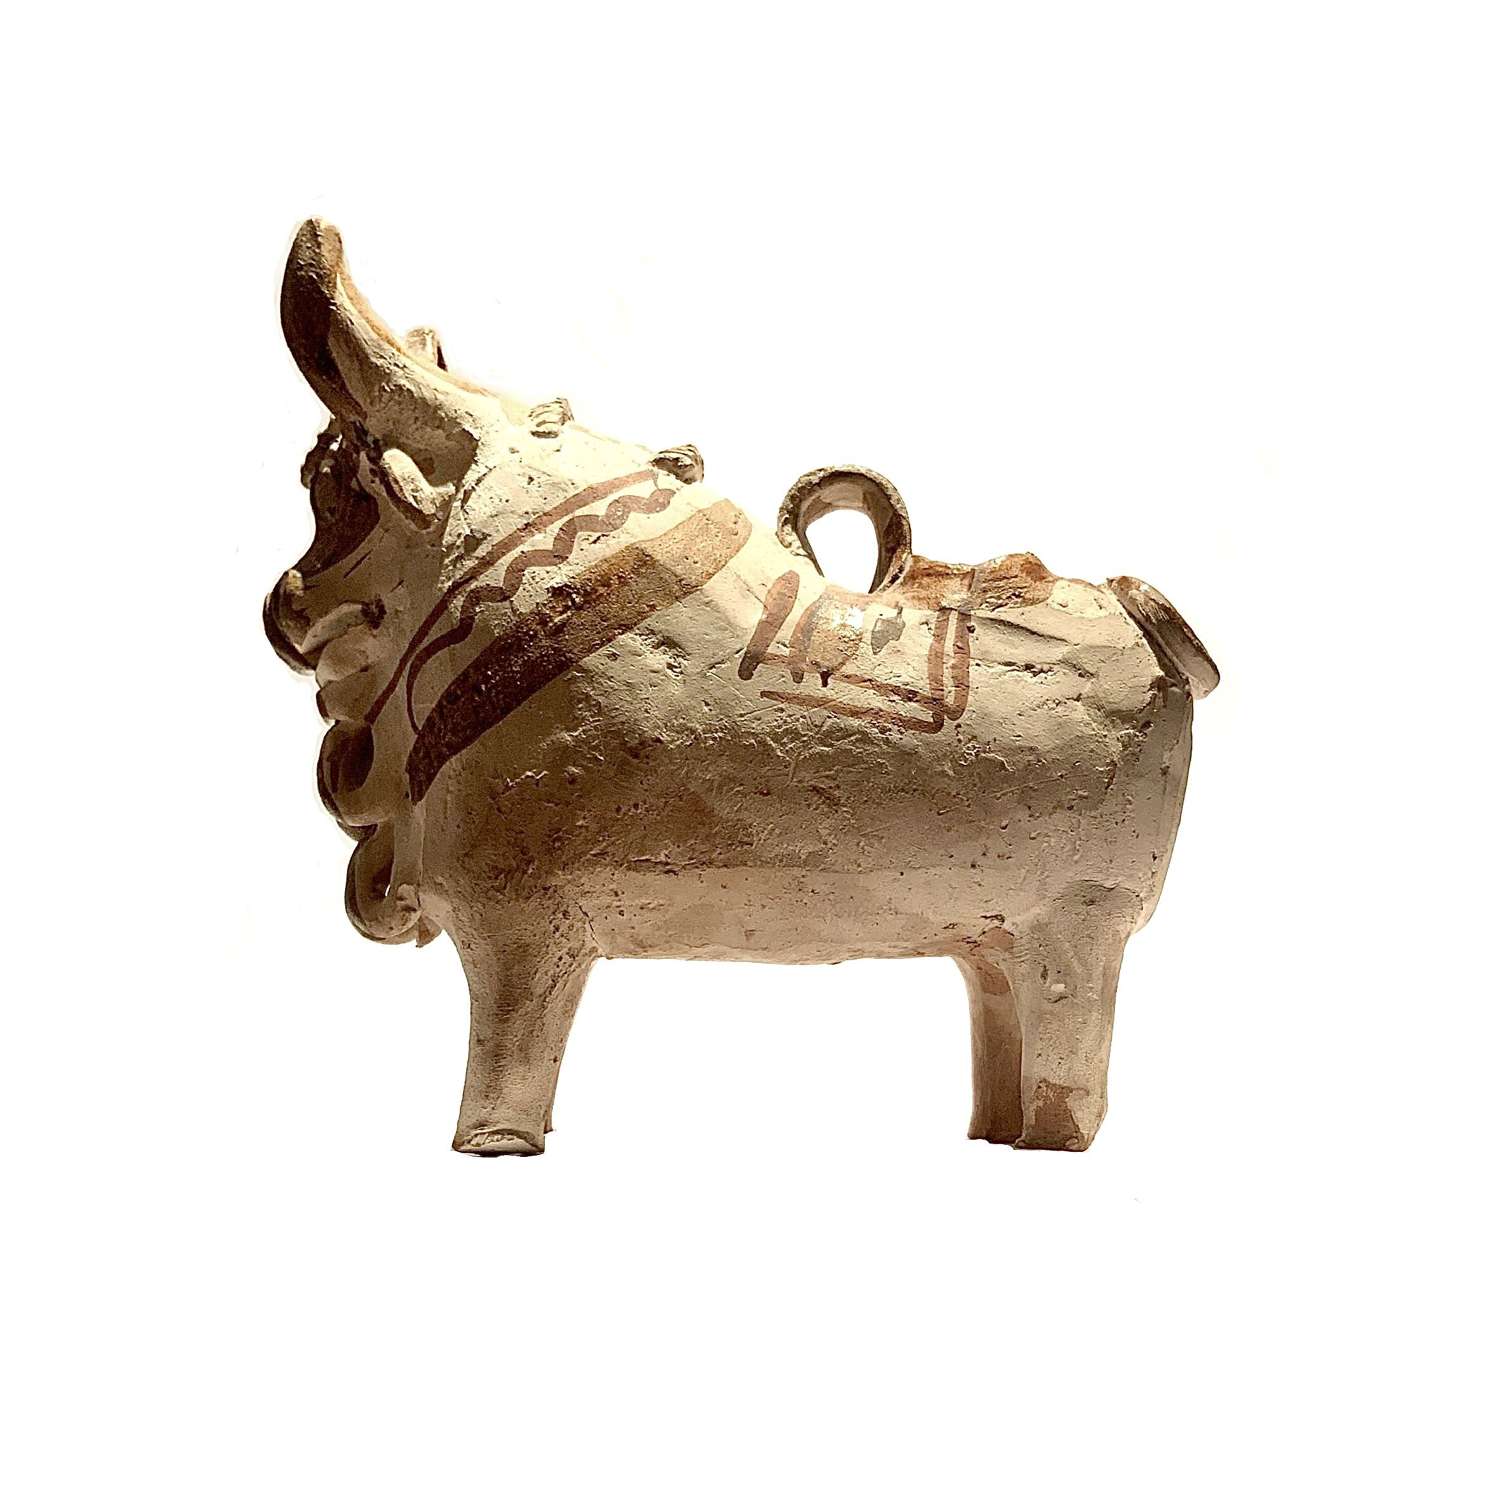 Early Ethnic Folk-Art Terracotta “Torito de Pucará” (Pucara Bull)